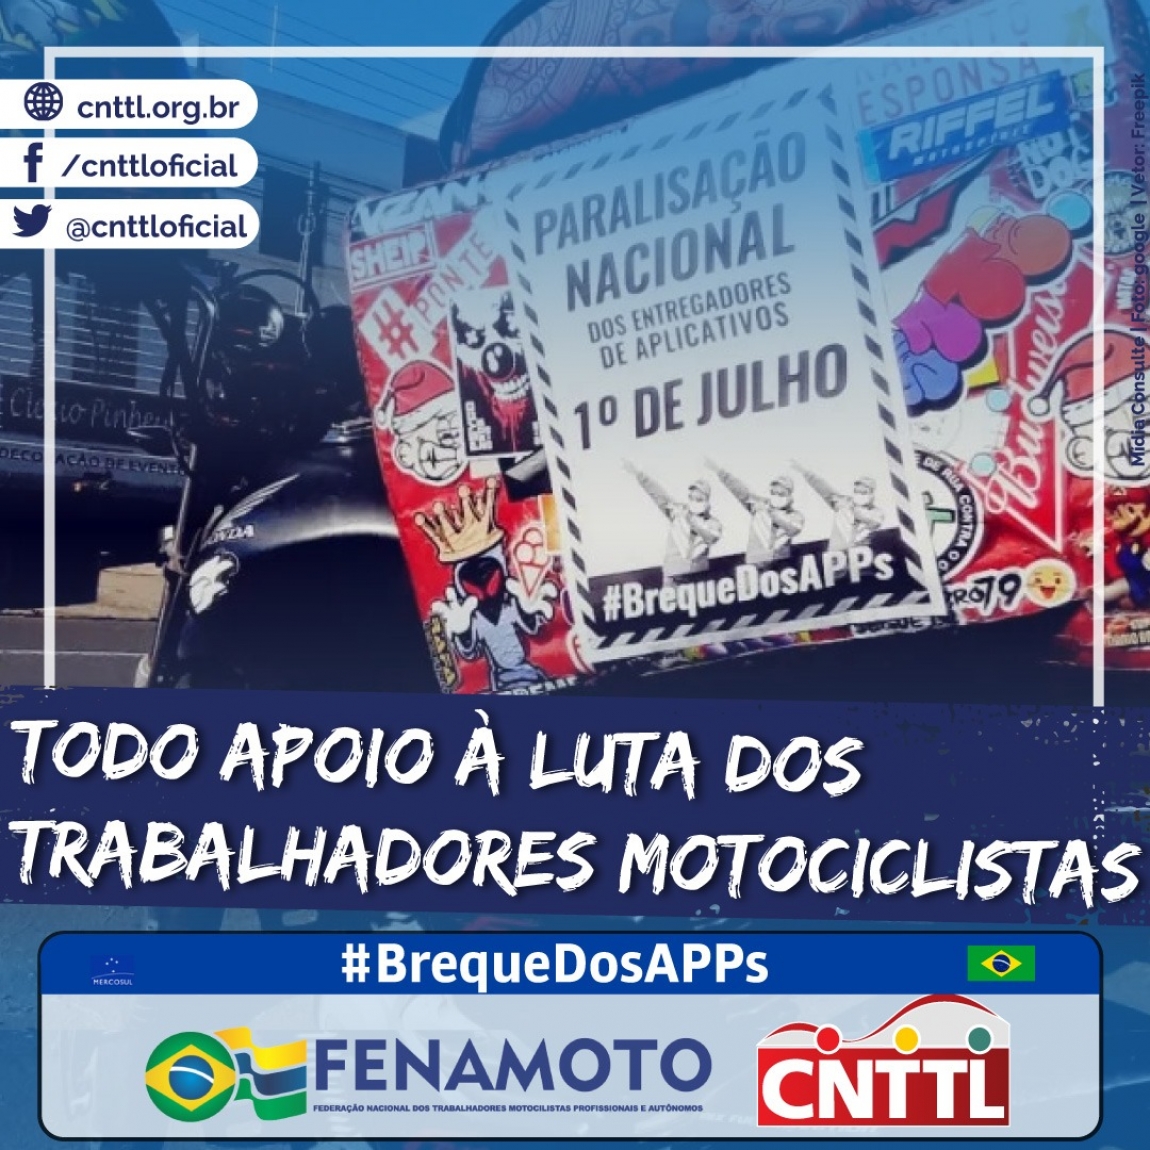 Imagem de Rumo à GREVE: “Vamos desligar nossos Apps no dia 1º de julho”, diz liderança da FENAMOTO